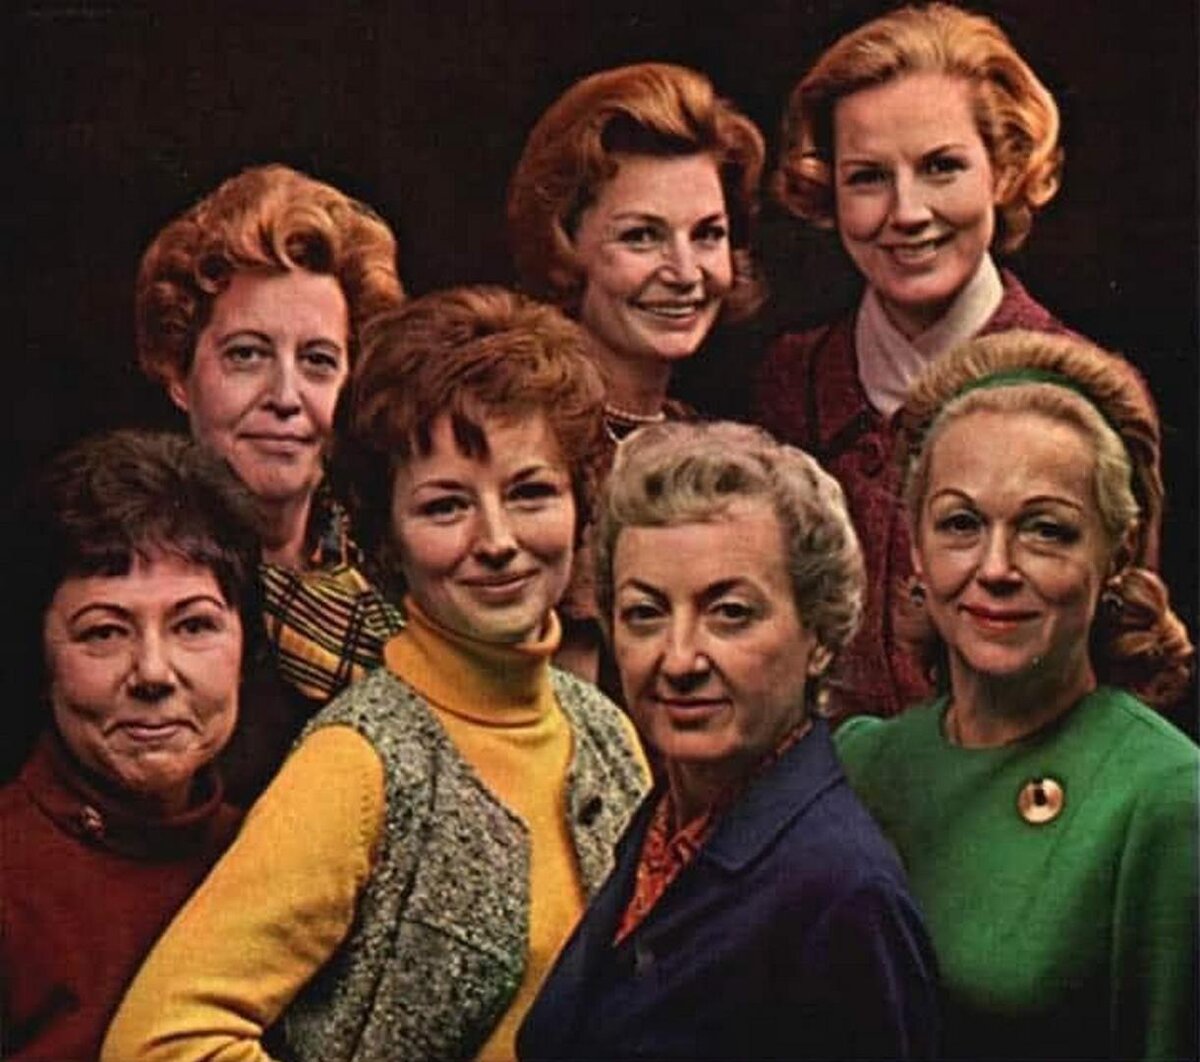 Всем дамам на фото 46 лет - вокруг этого факта была выстроена реклама. 1972 год. 